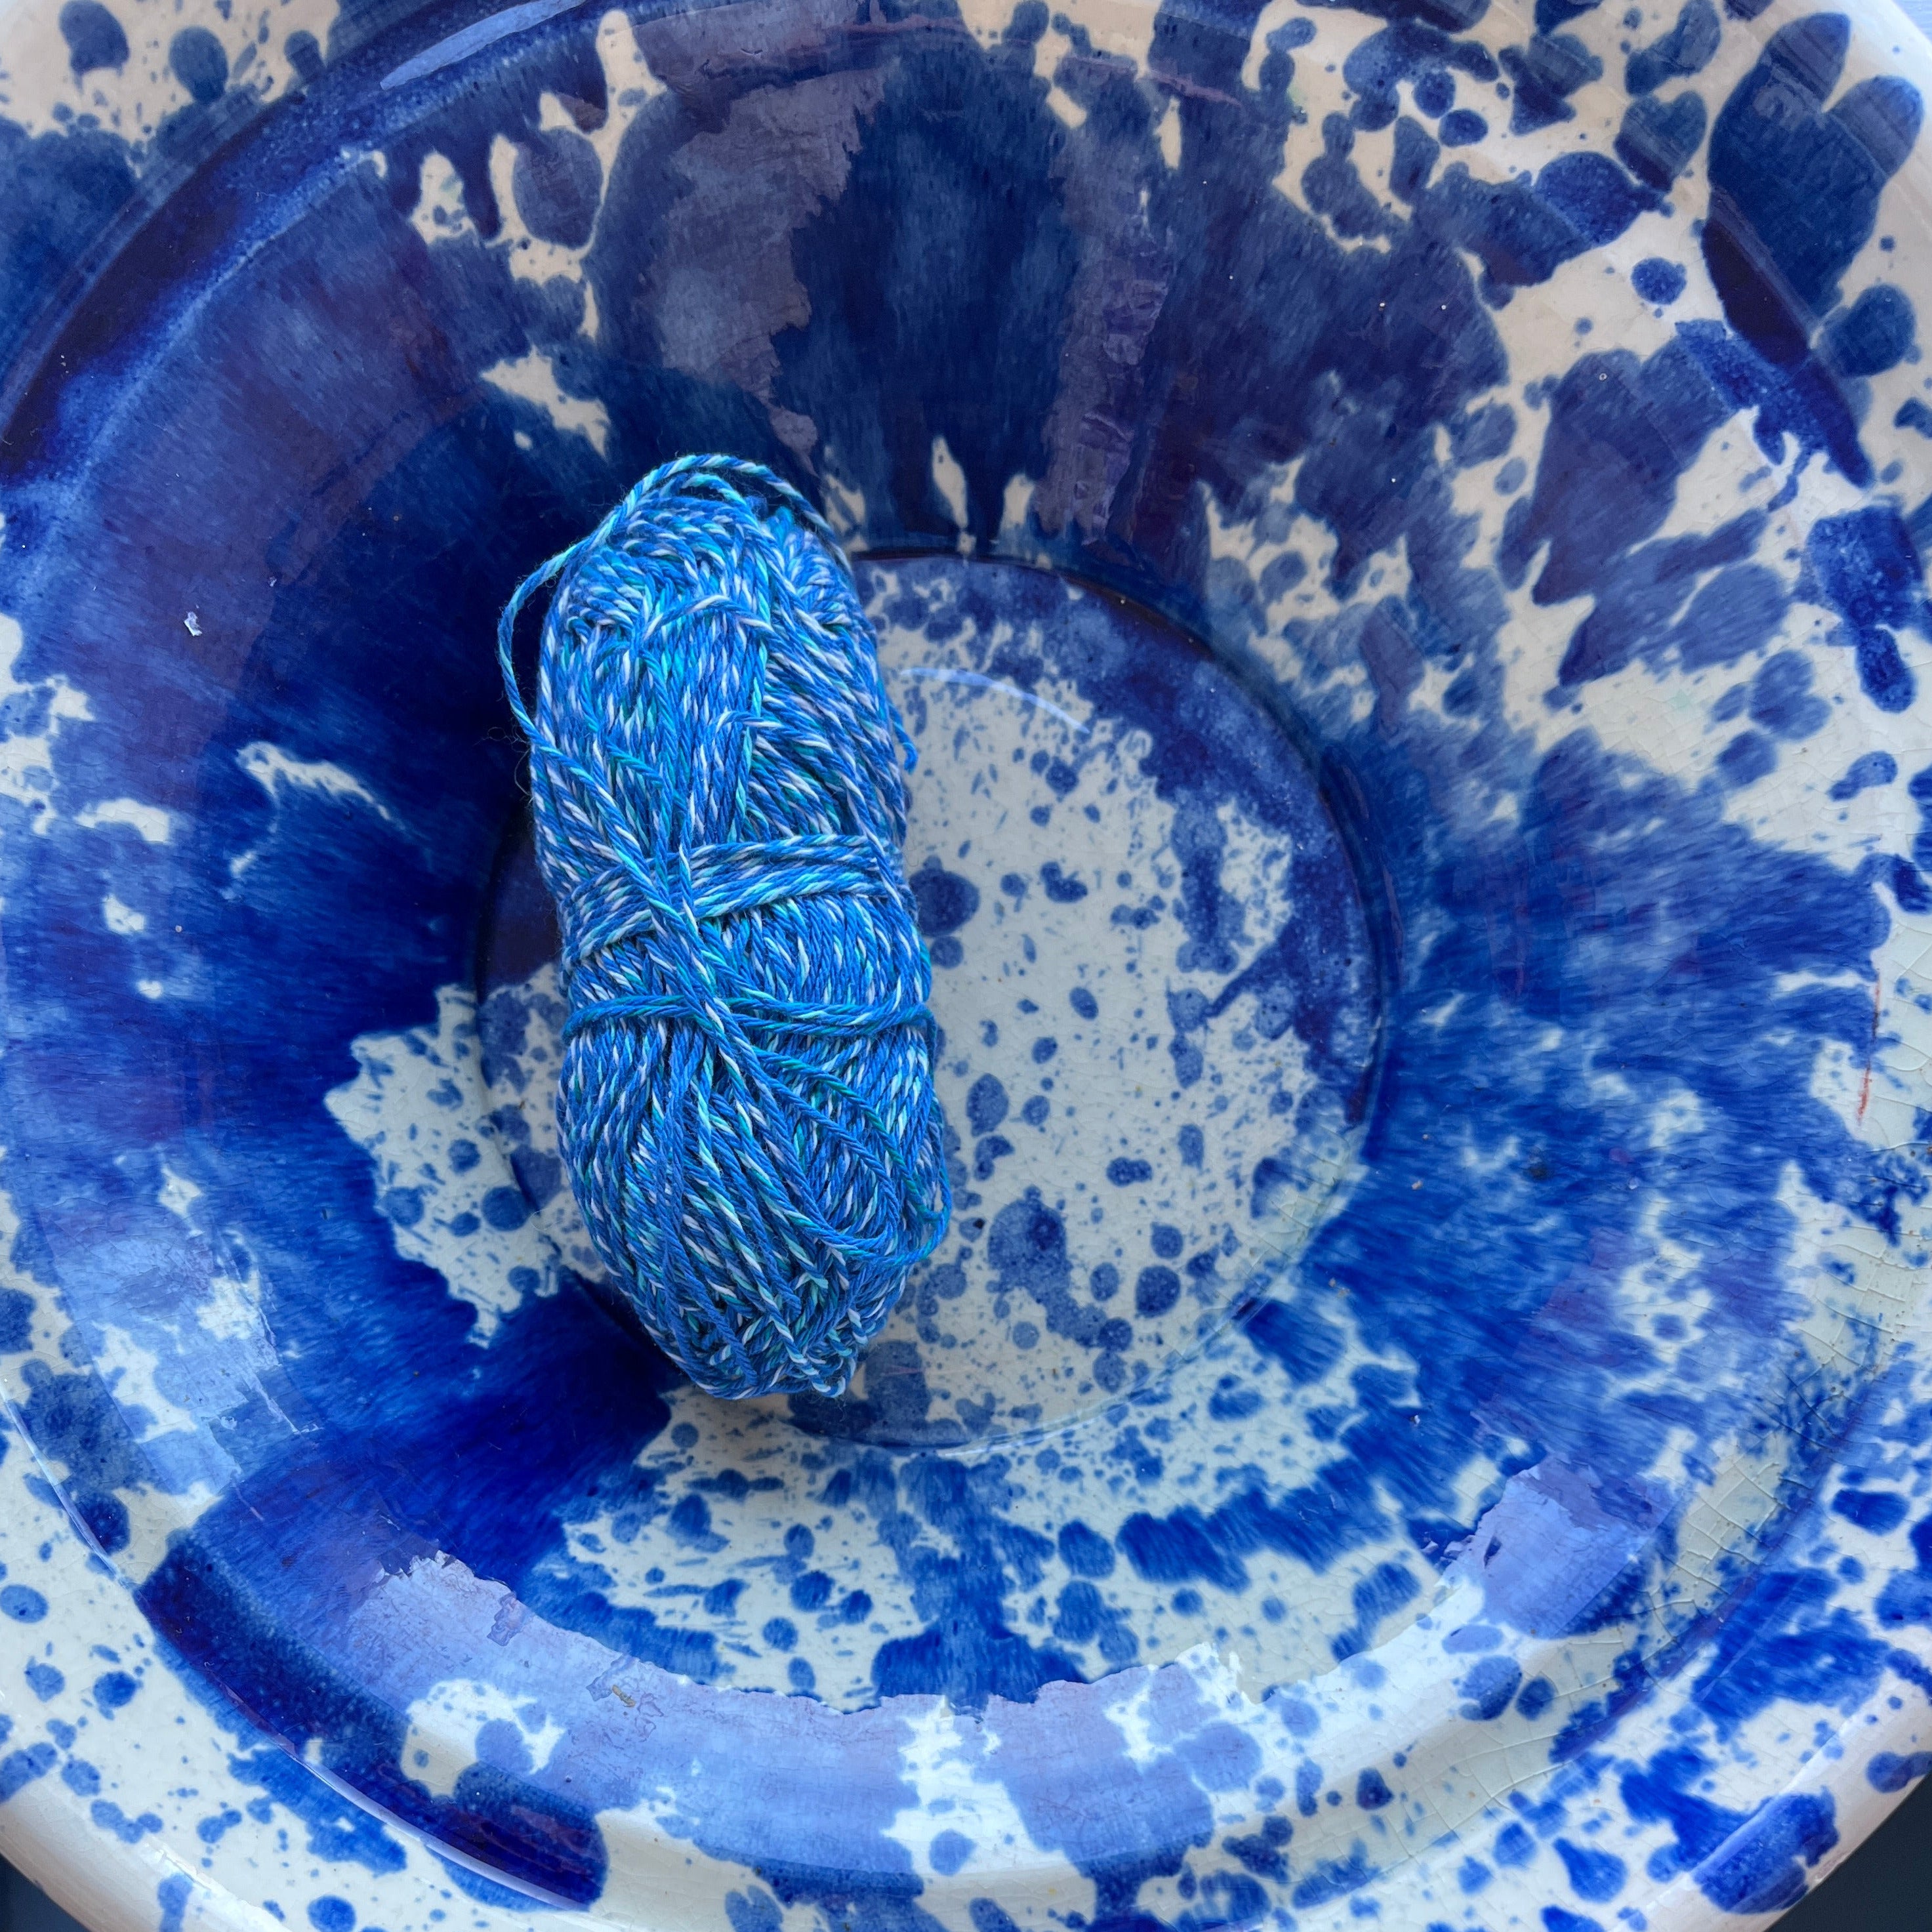 Blue speckled vintage bowl